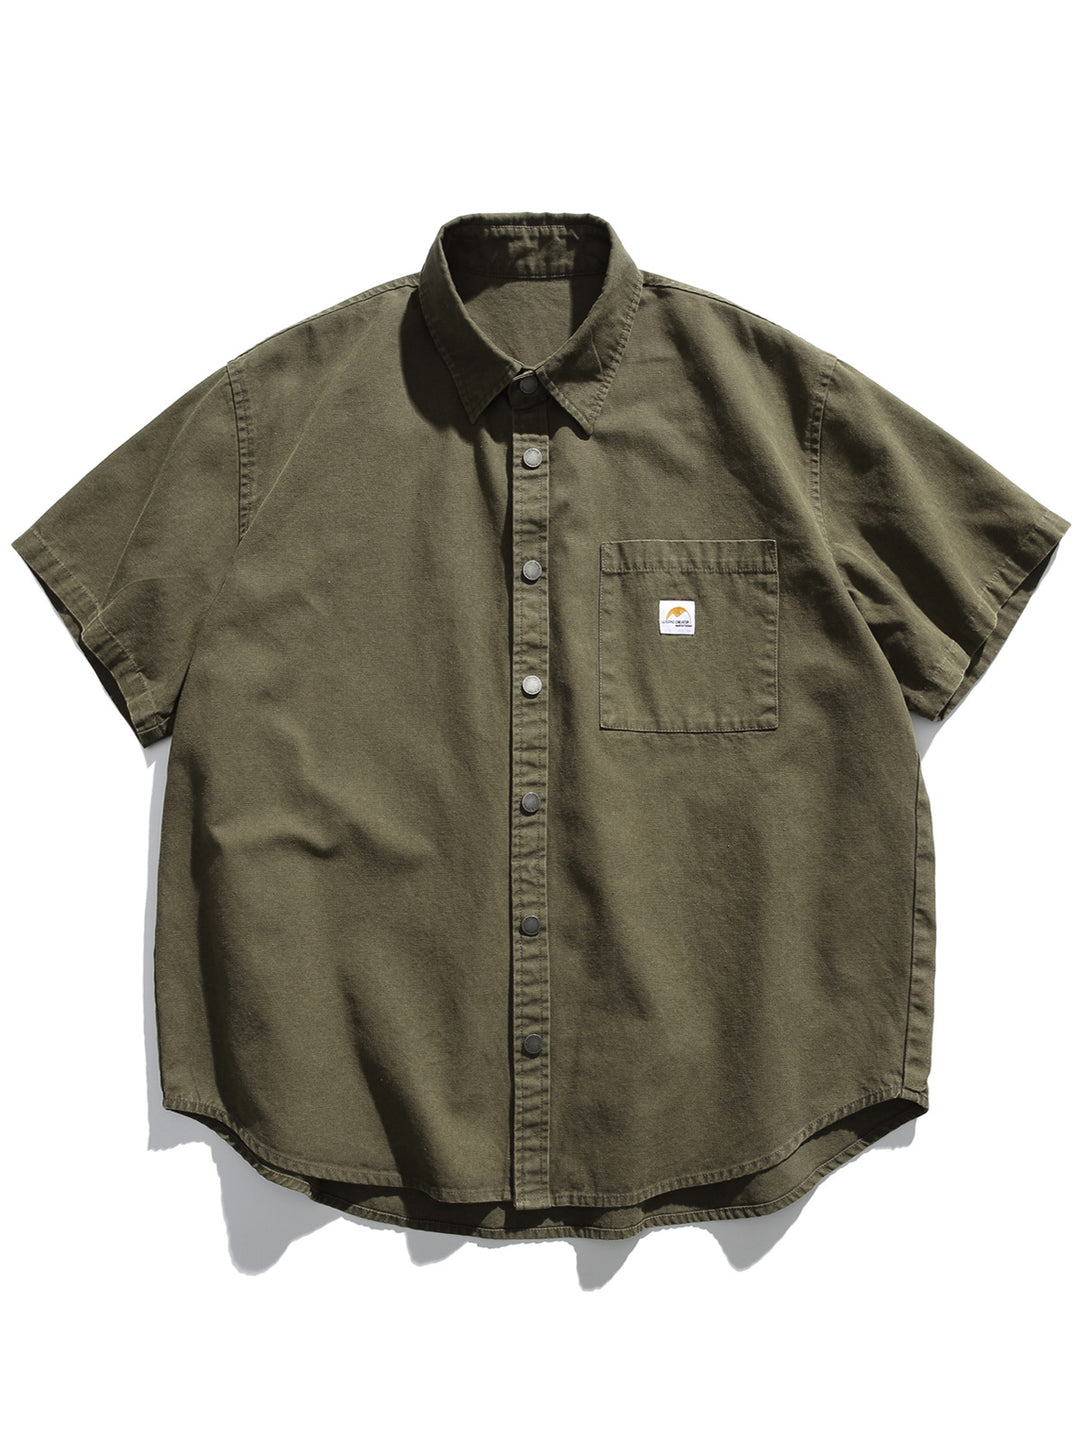 Japanese Retro Military Short Sleeve Shirt